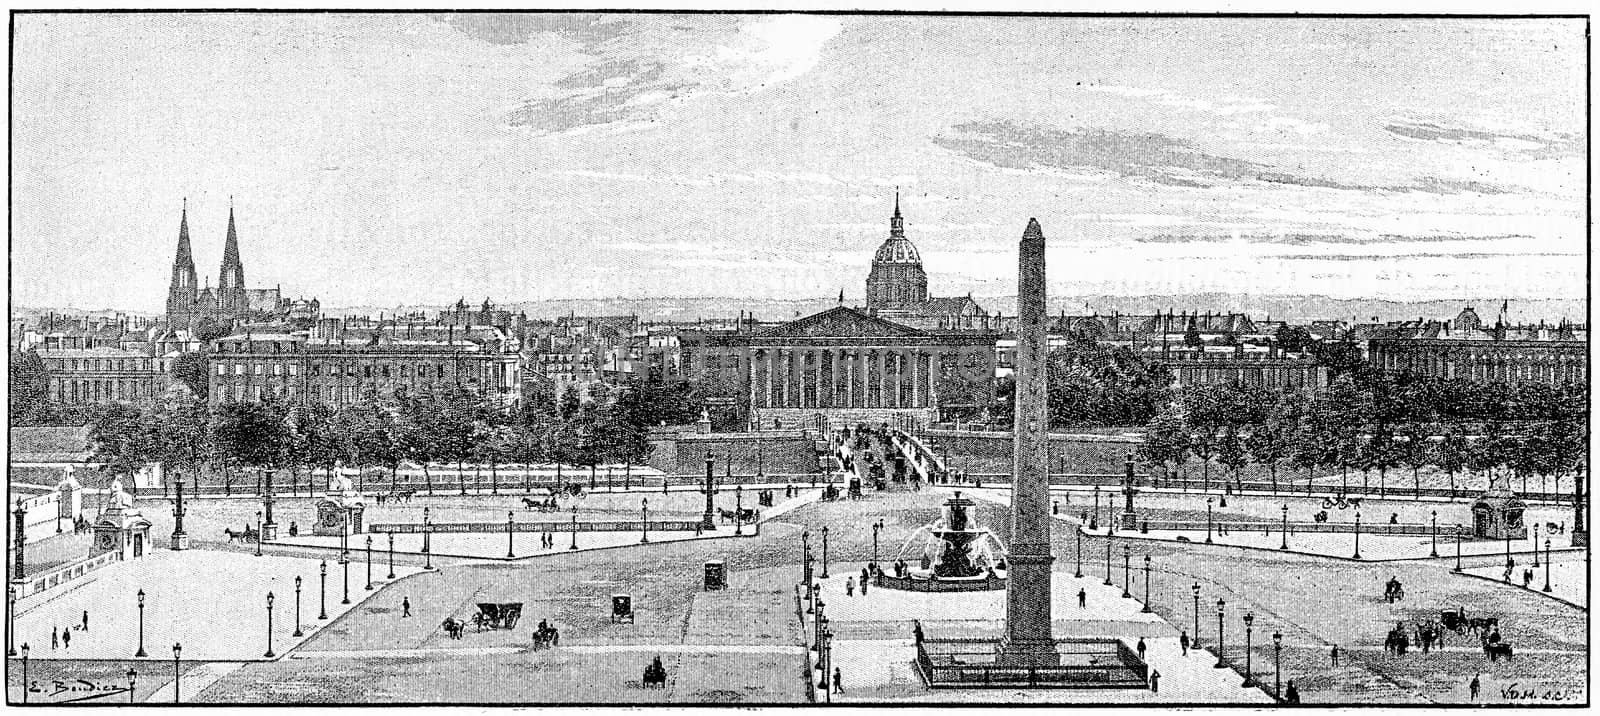 Place de la Concorde, vintage engraved illustration. Paris - Auguste VITU – 1890.